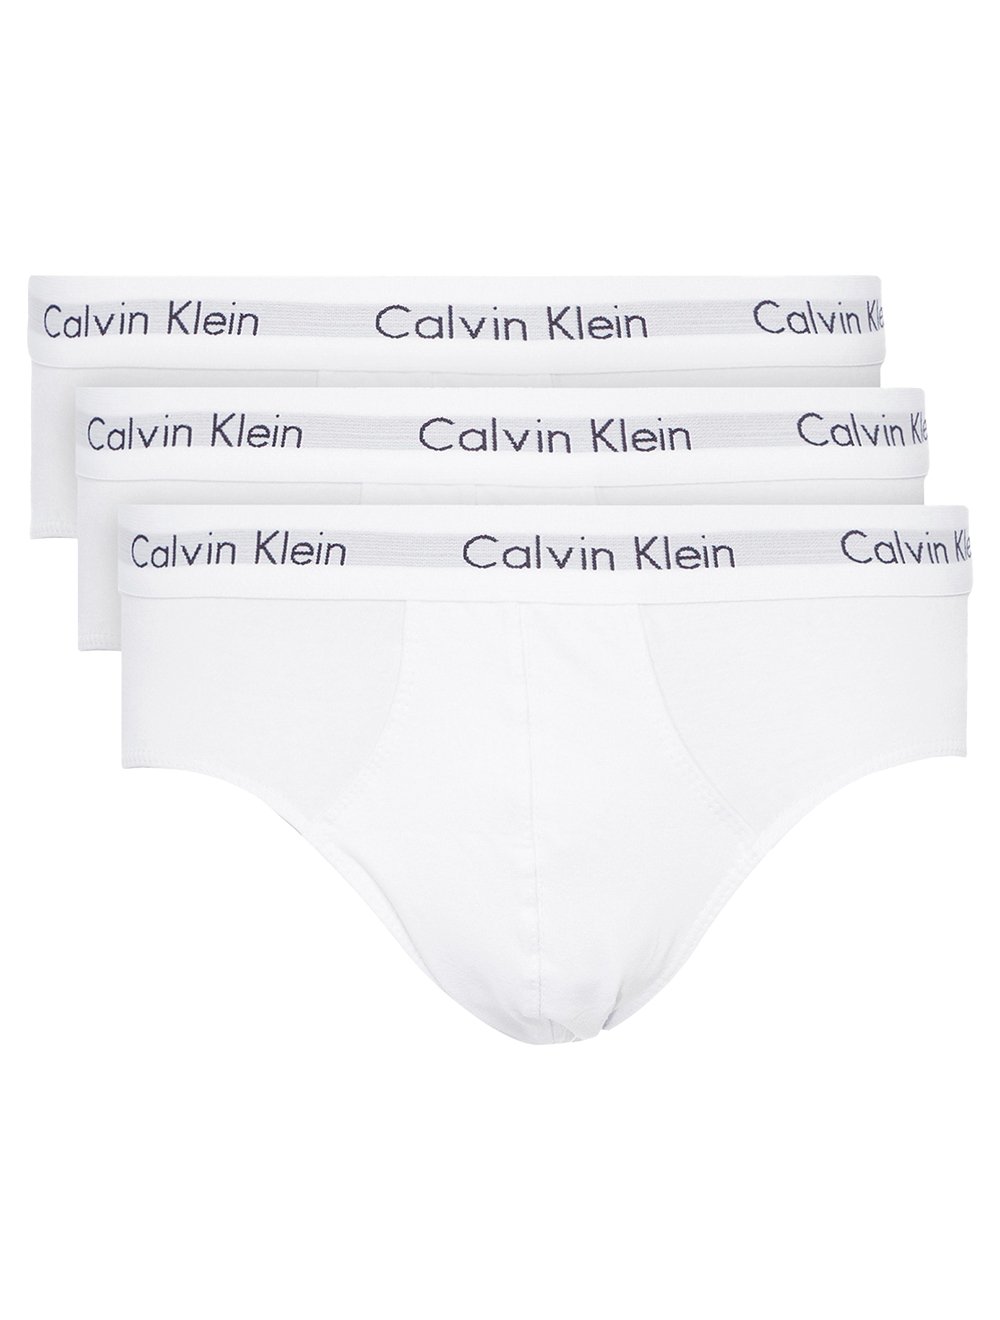 Calvin Klein Cotton Stretch 3 Pack Hip Brief U2661 White Mens